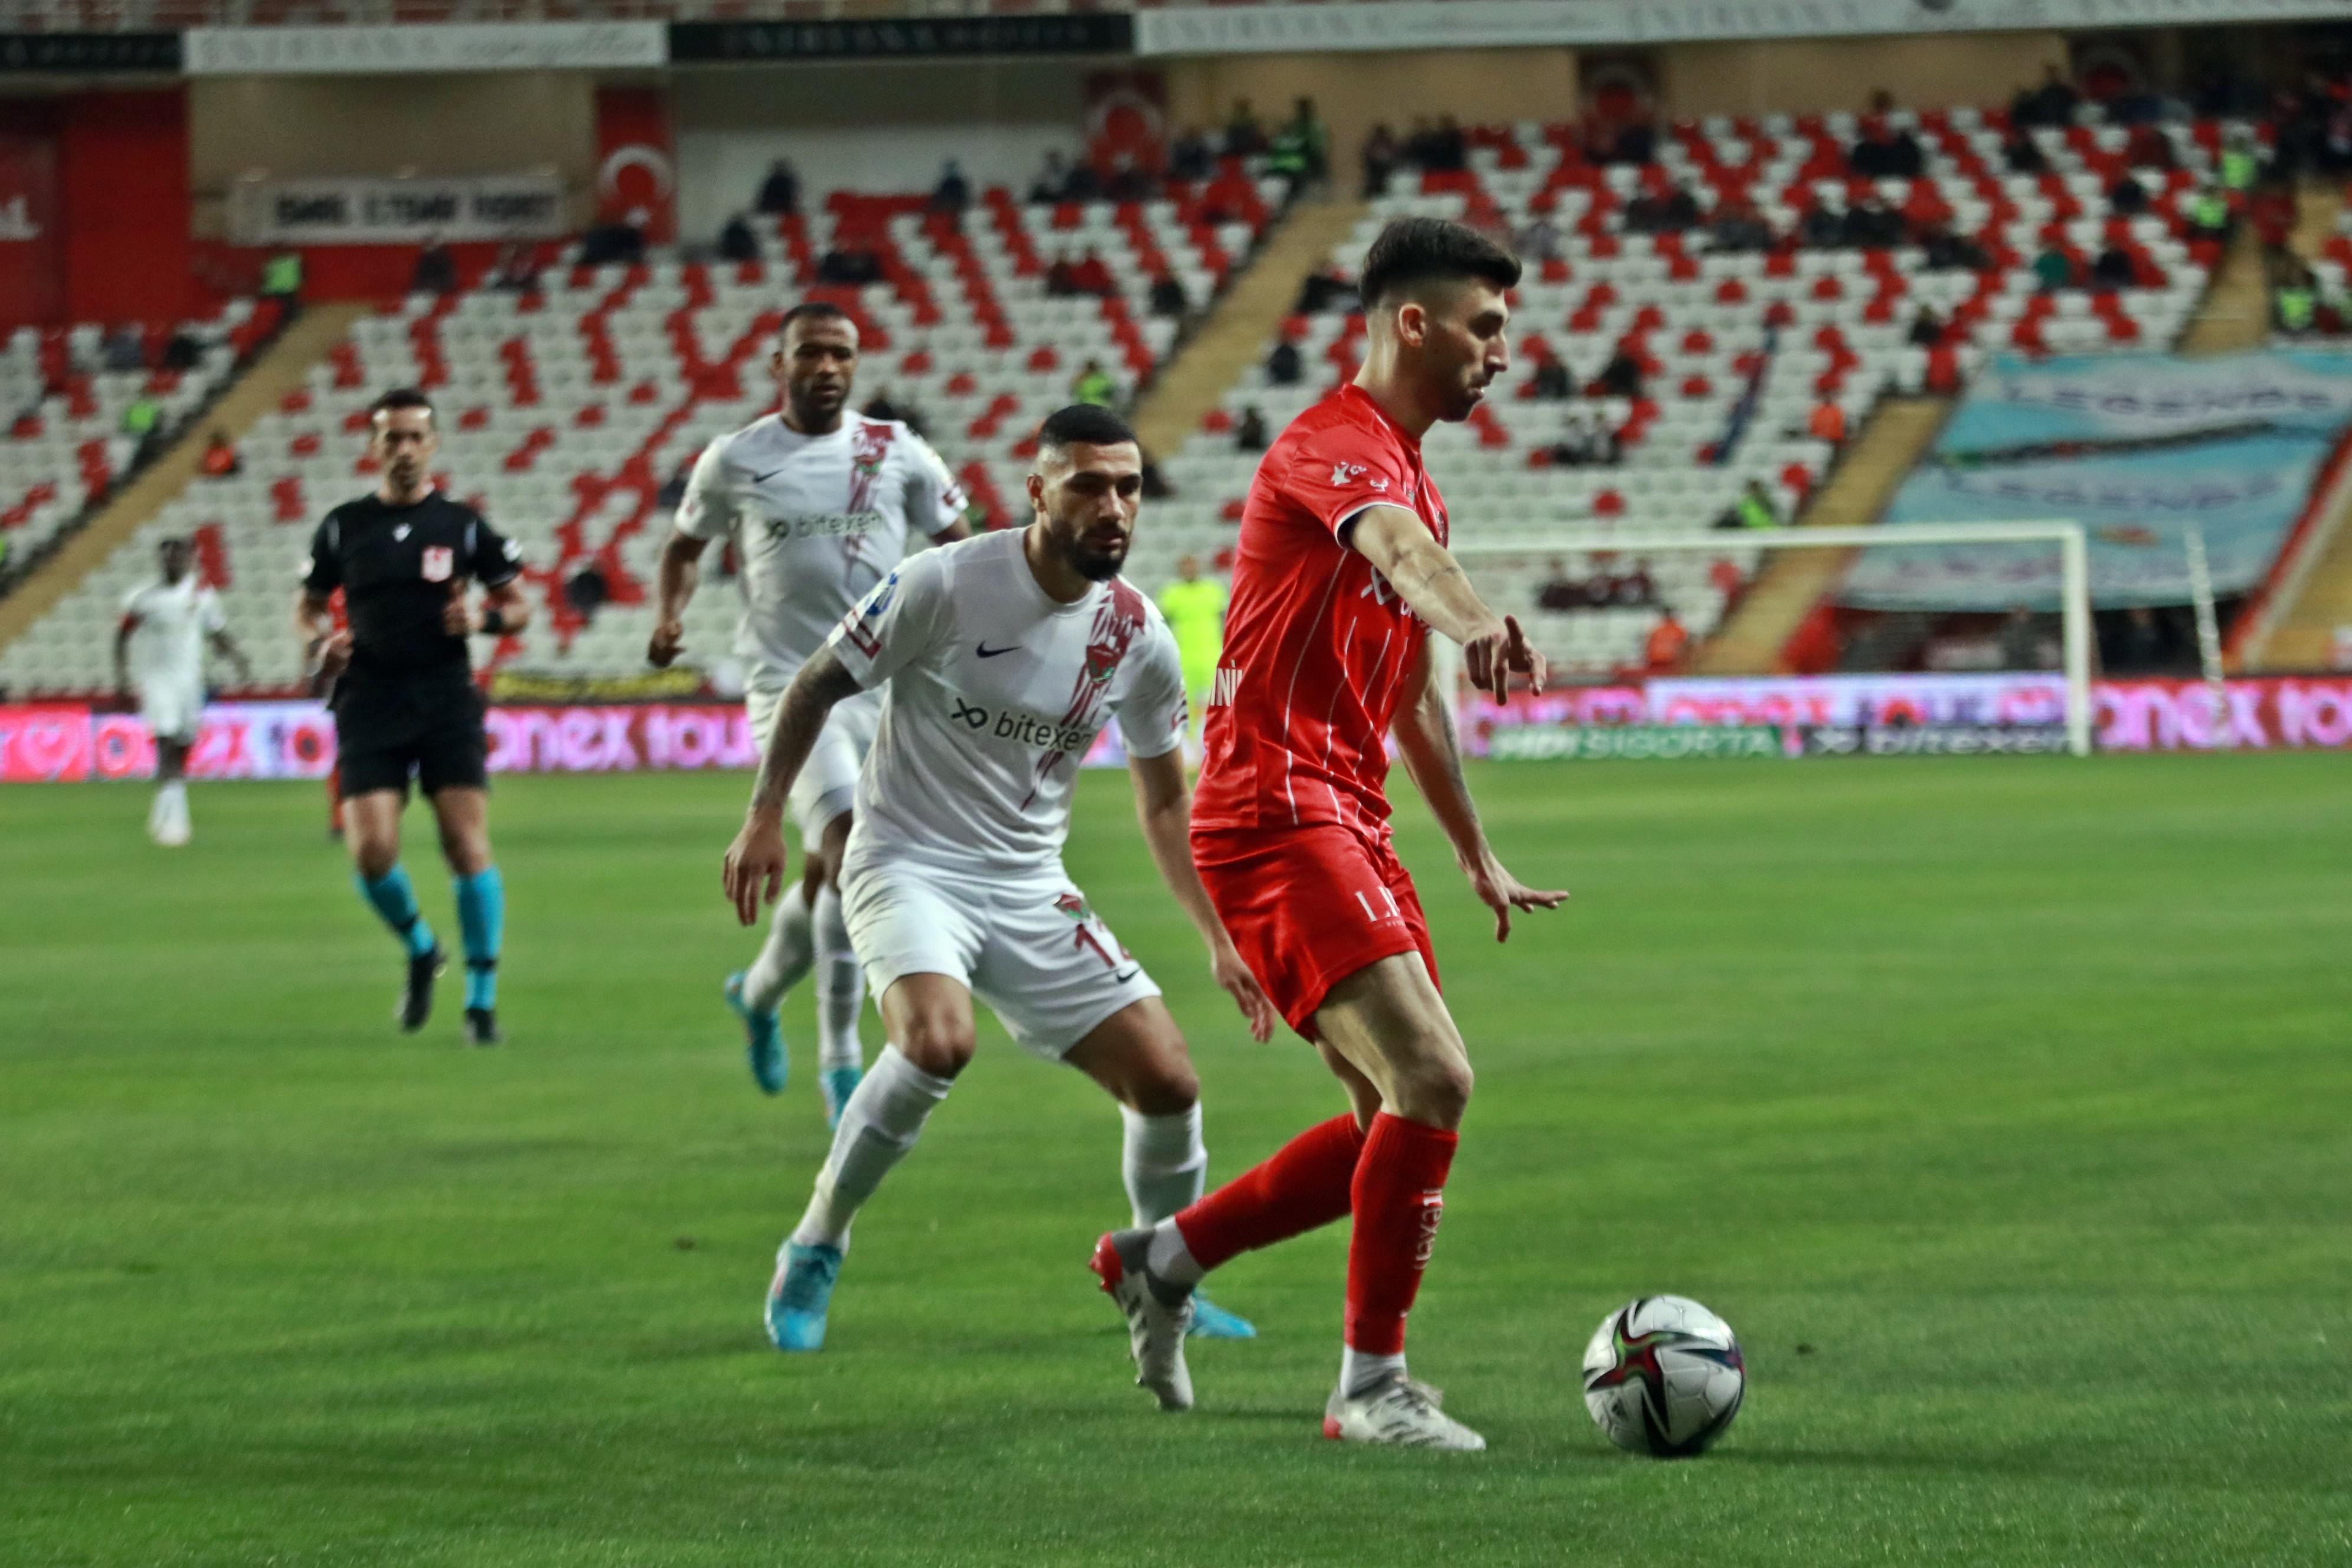 Antalyaspor-Hatayspor maç sonucu: 4-1